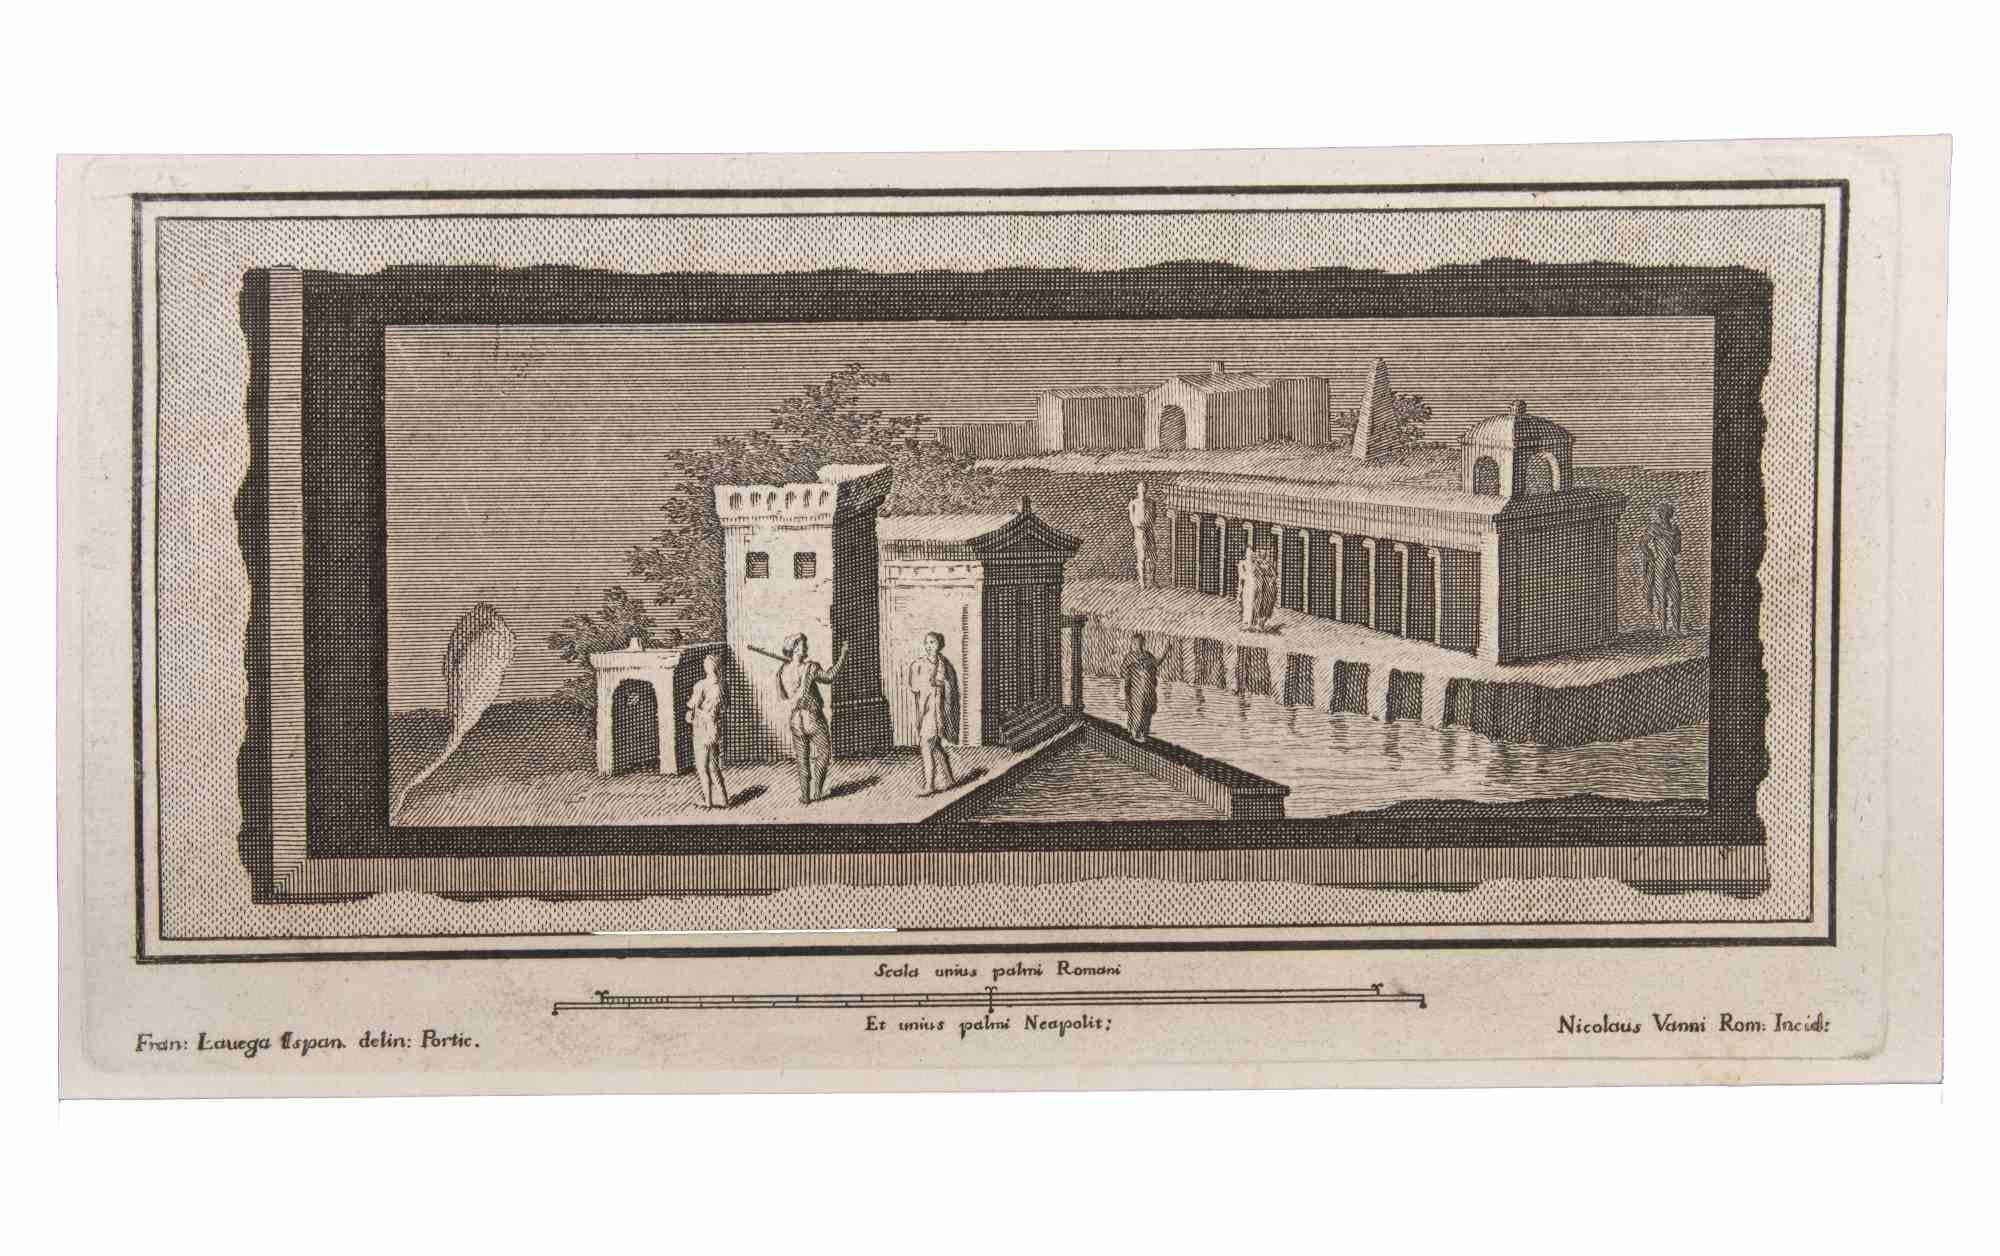 Seelandschaft mit Monument und Figuren ist eine Radierung realisiert von  Niccolò Vanni (1750-1770).

Die Radierung gehört zu der Druckserie "Antiquities of Herculaneum Exposed" (Originaltitel: "Le Antichità di Ercolano Esposte"), einem achtbändigen